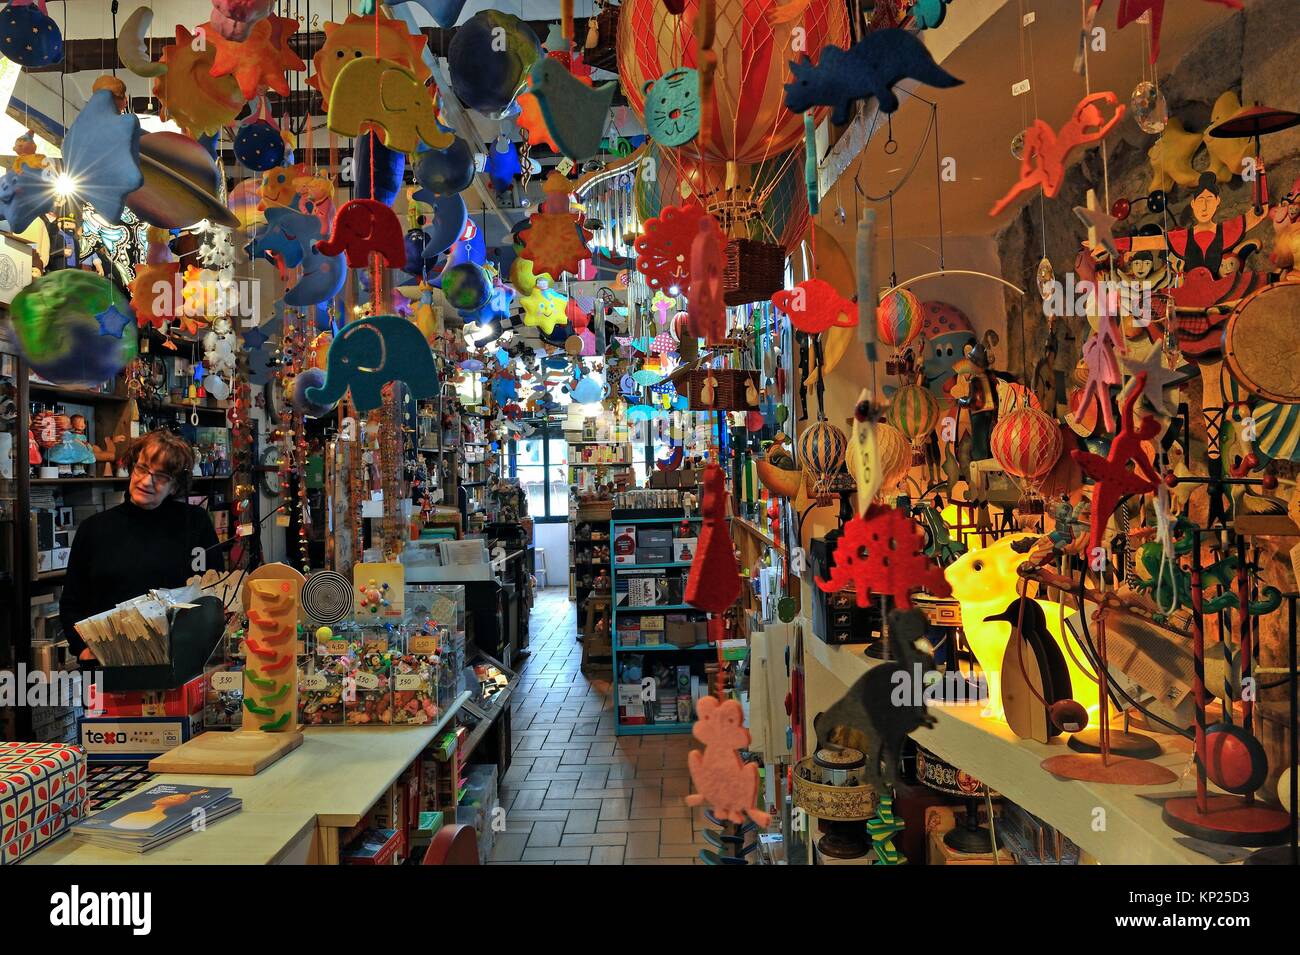 Tienda de juguetes españa fotografías e imágenes de alta resolución - Alamy